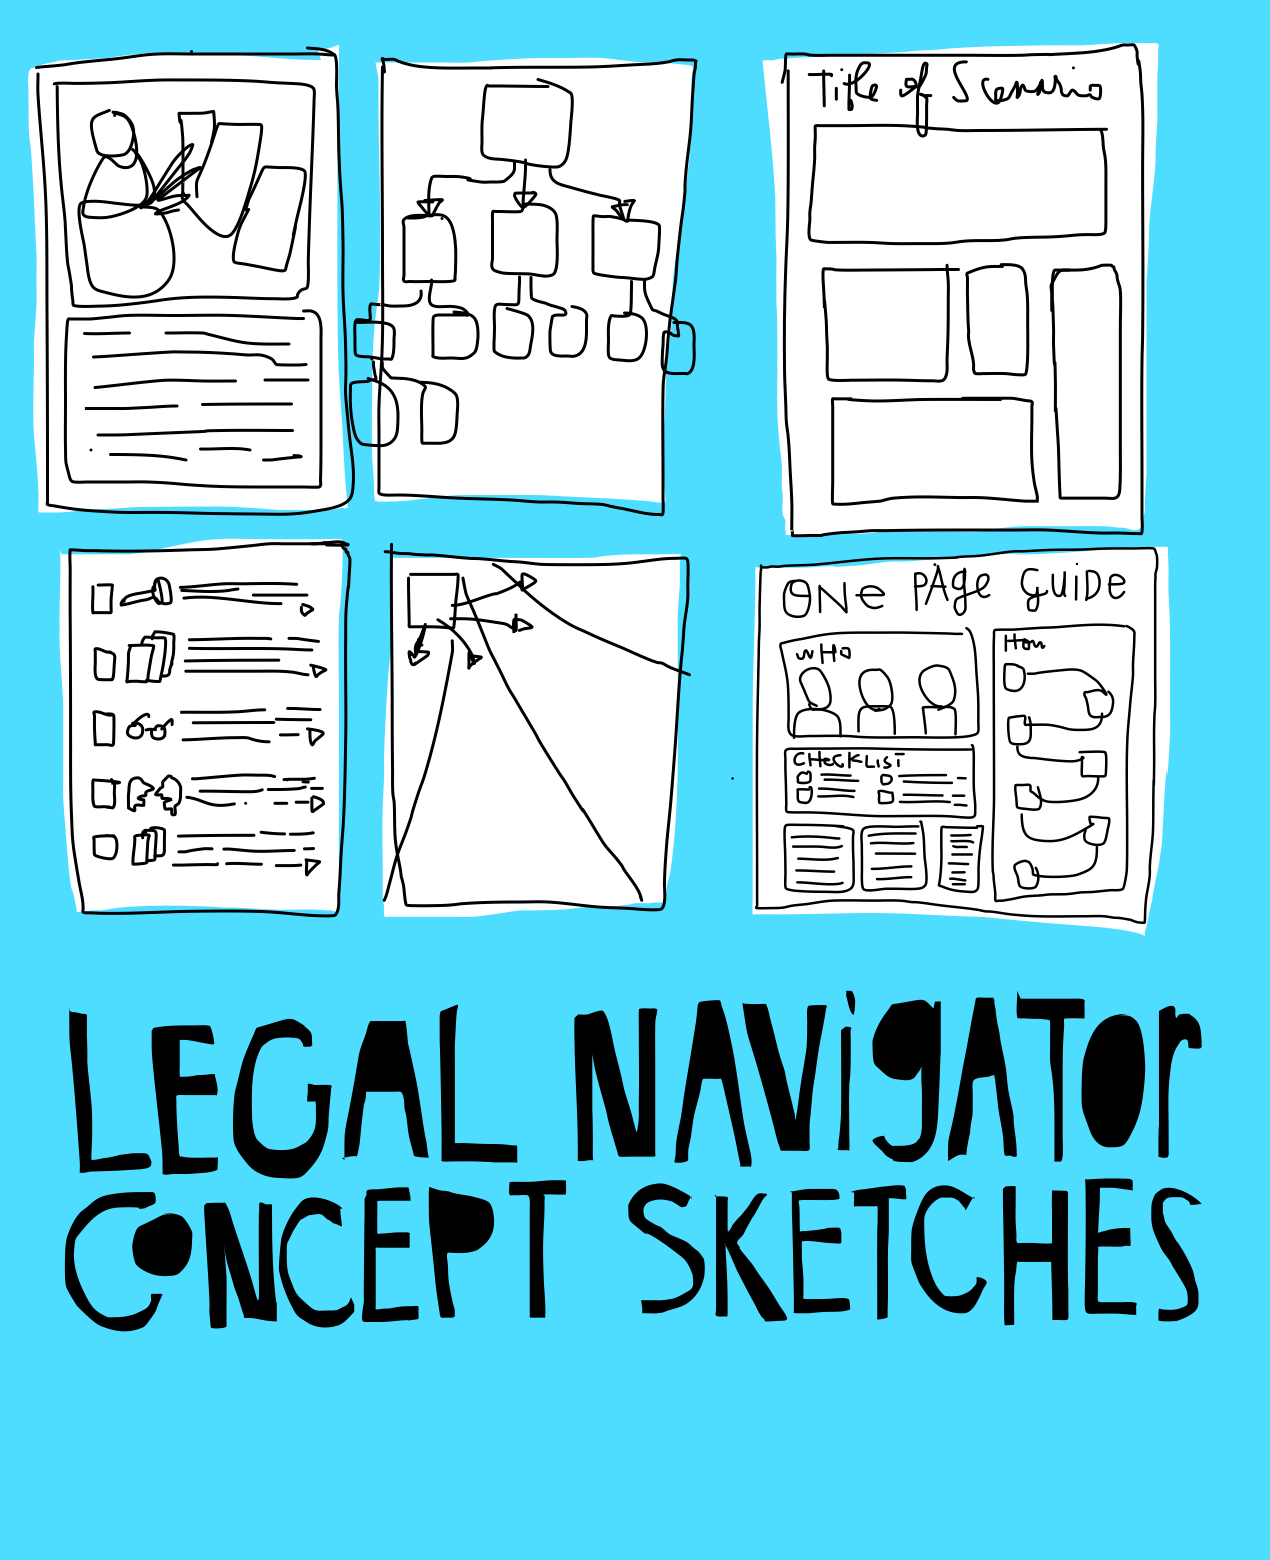 Legal Navigator Images